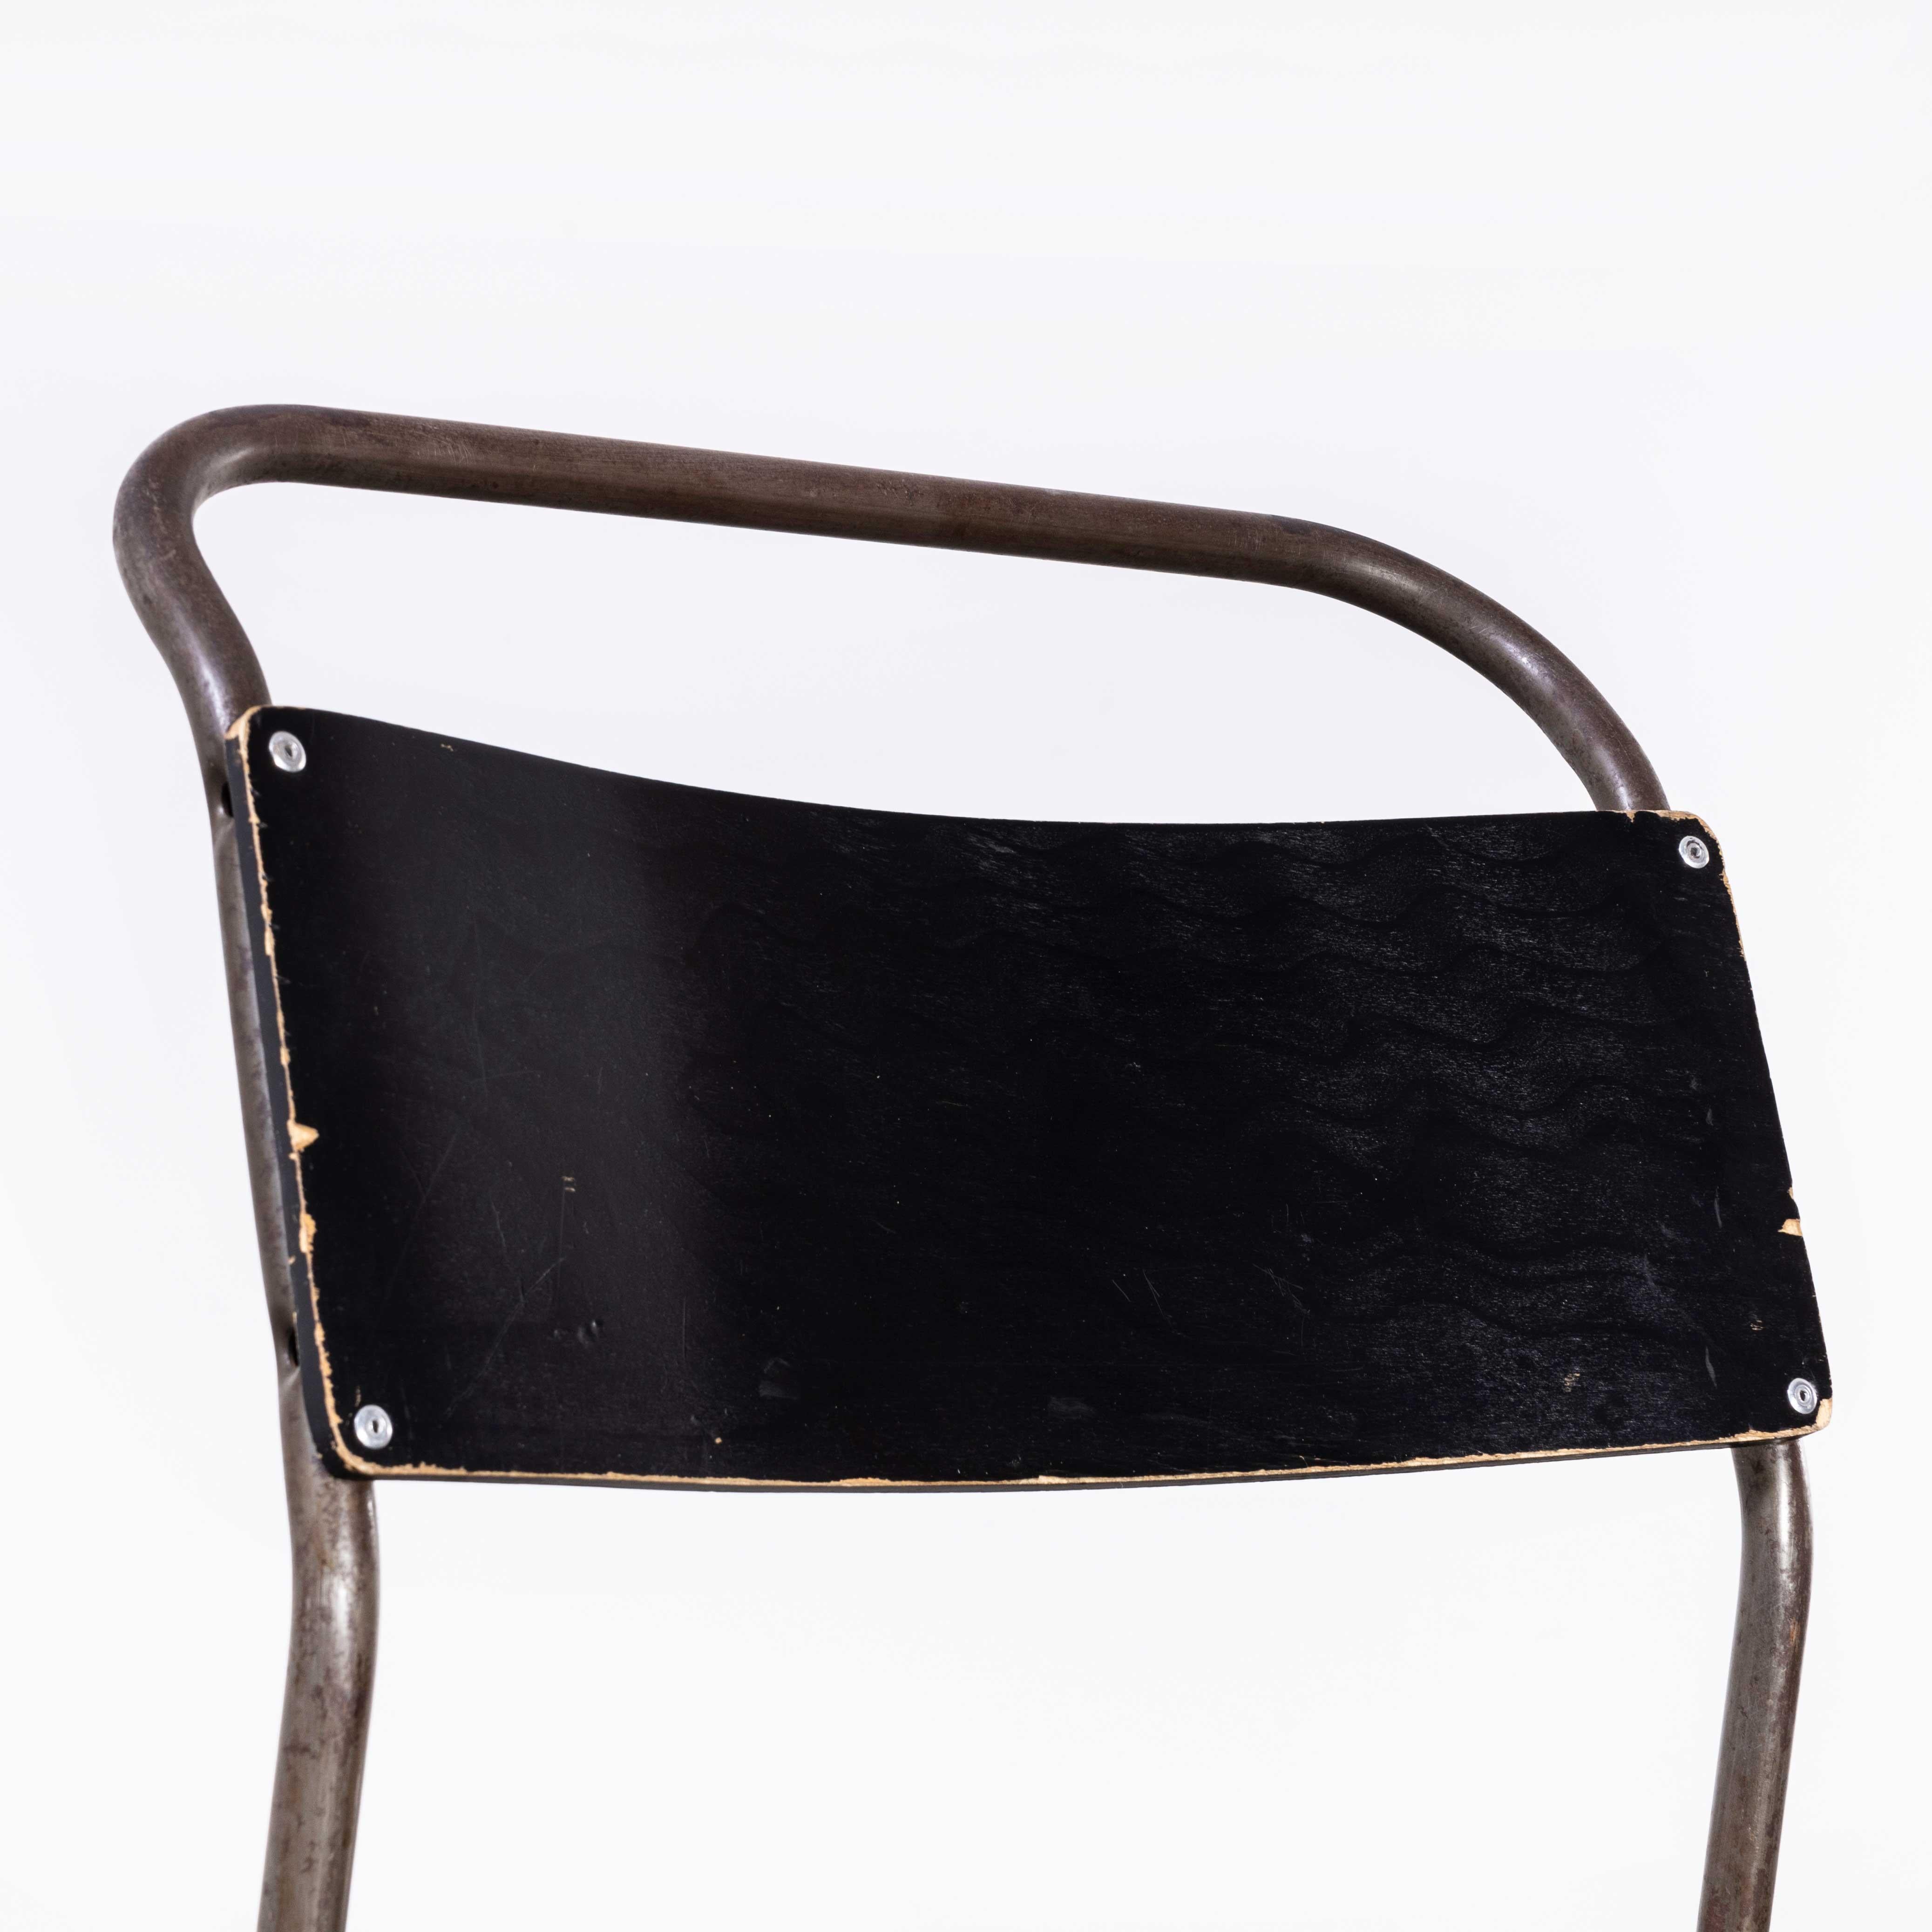 ensemble de quatorze chaises de salle à manger Remploy des années 1950, en métal tubulaire à assise noire
ensemble de quatorze chaises de salle à manger Remploy des années 1950, en métal tubulaire à assise noire. Ces chaises sont un essentiel